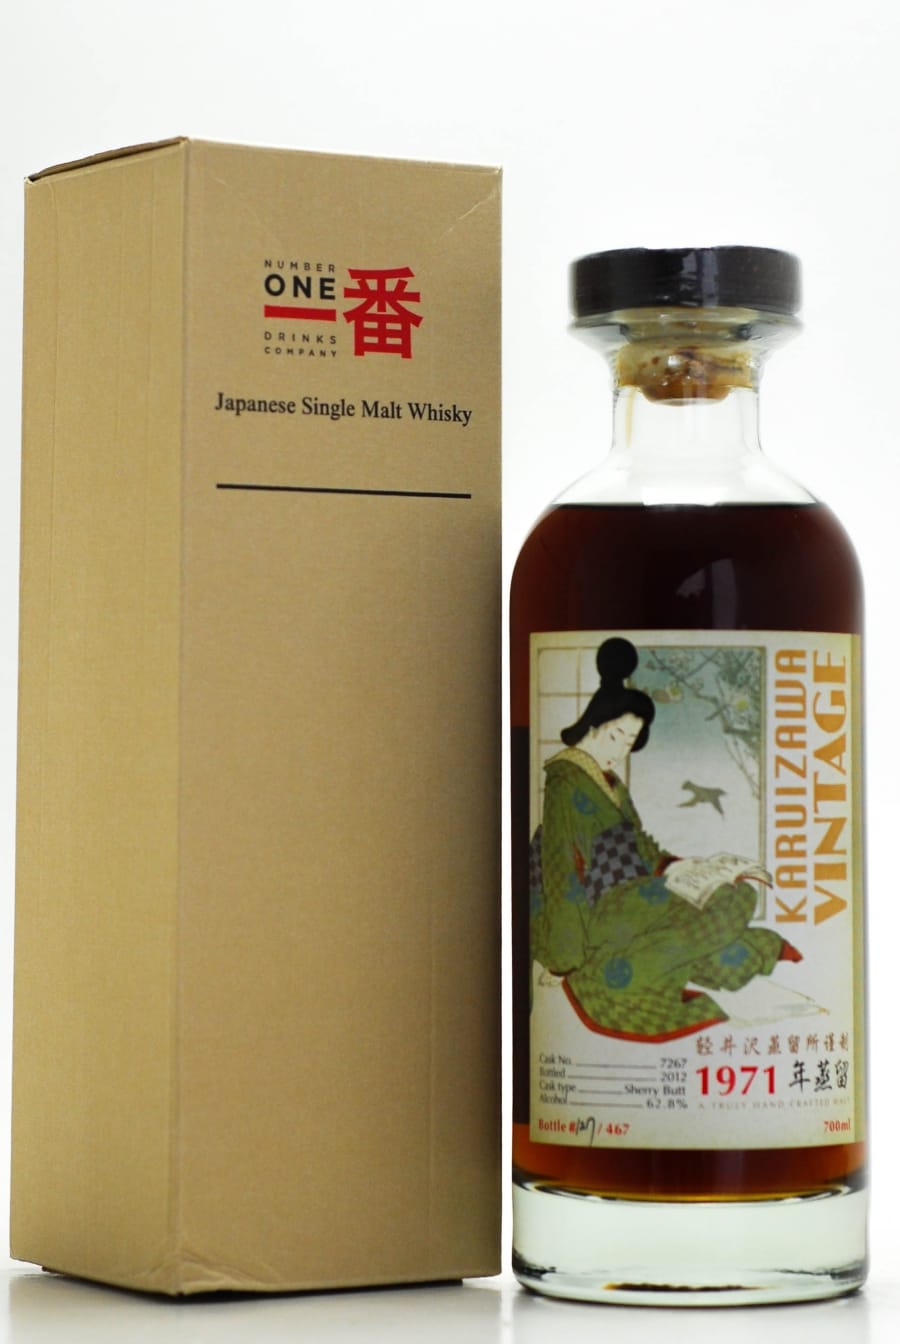 Karuizawa - Karuizawa 1971 Geisha labels Botteling Serie Cask: 7267 For Taiwan 1 Of 467 Bottles 62.8% 1971 In Original Container